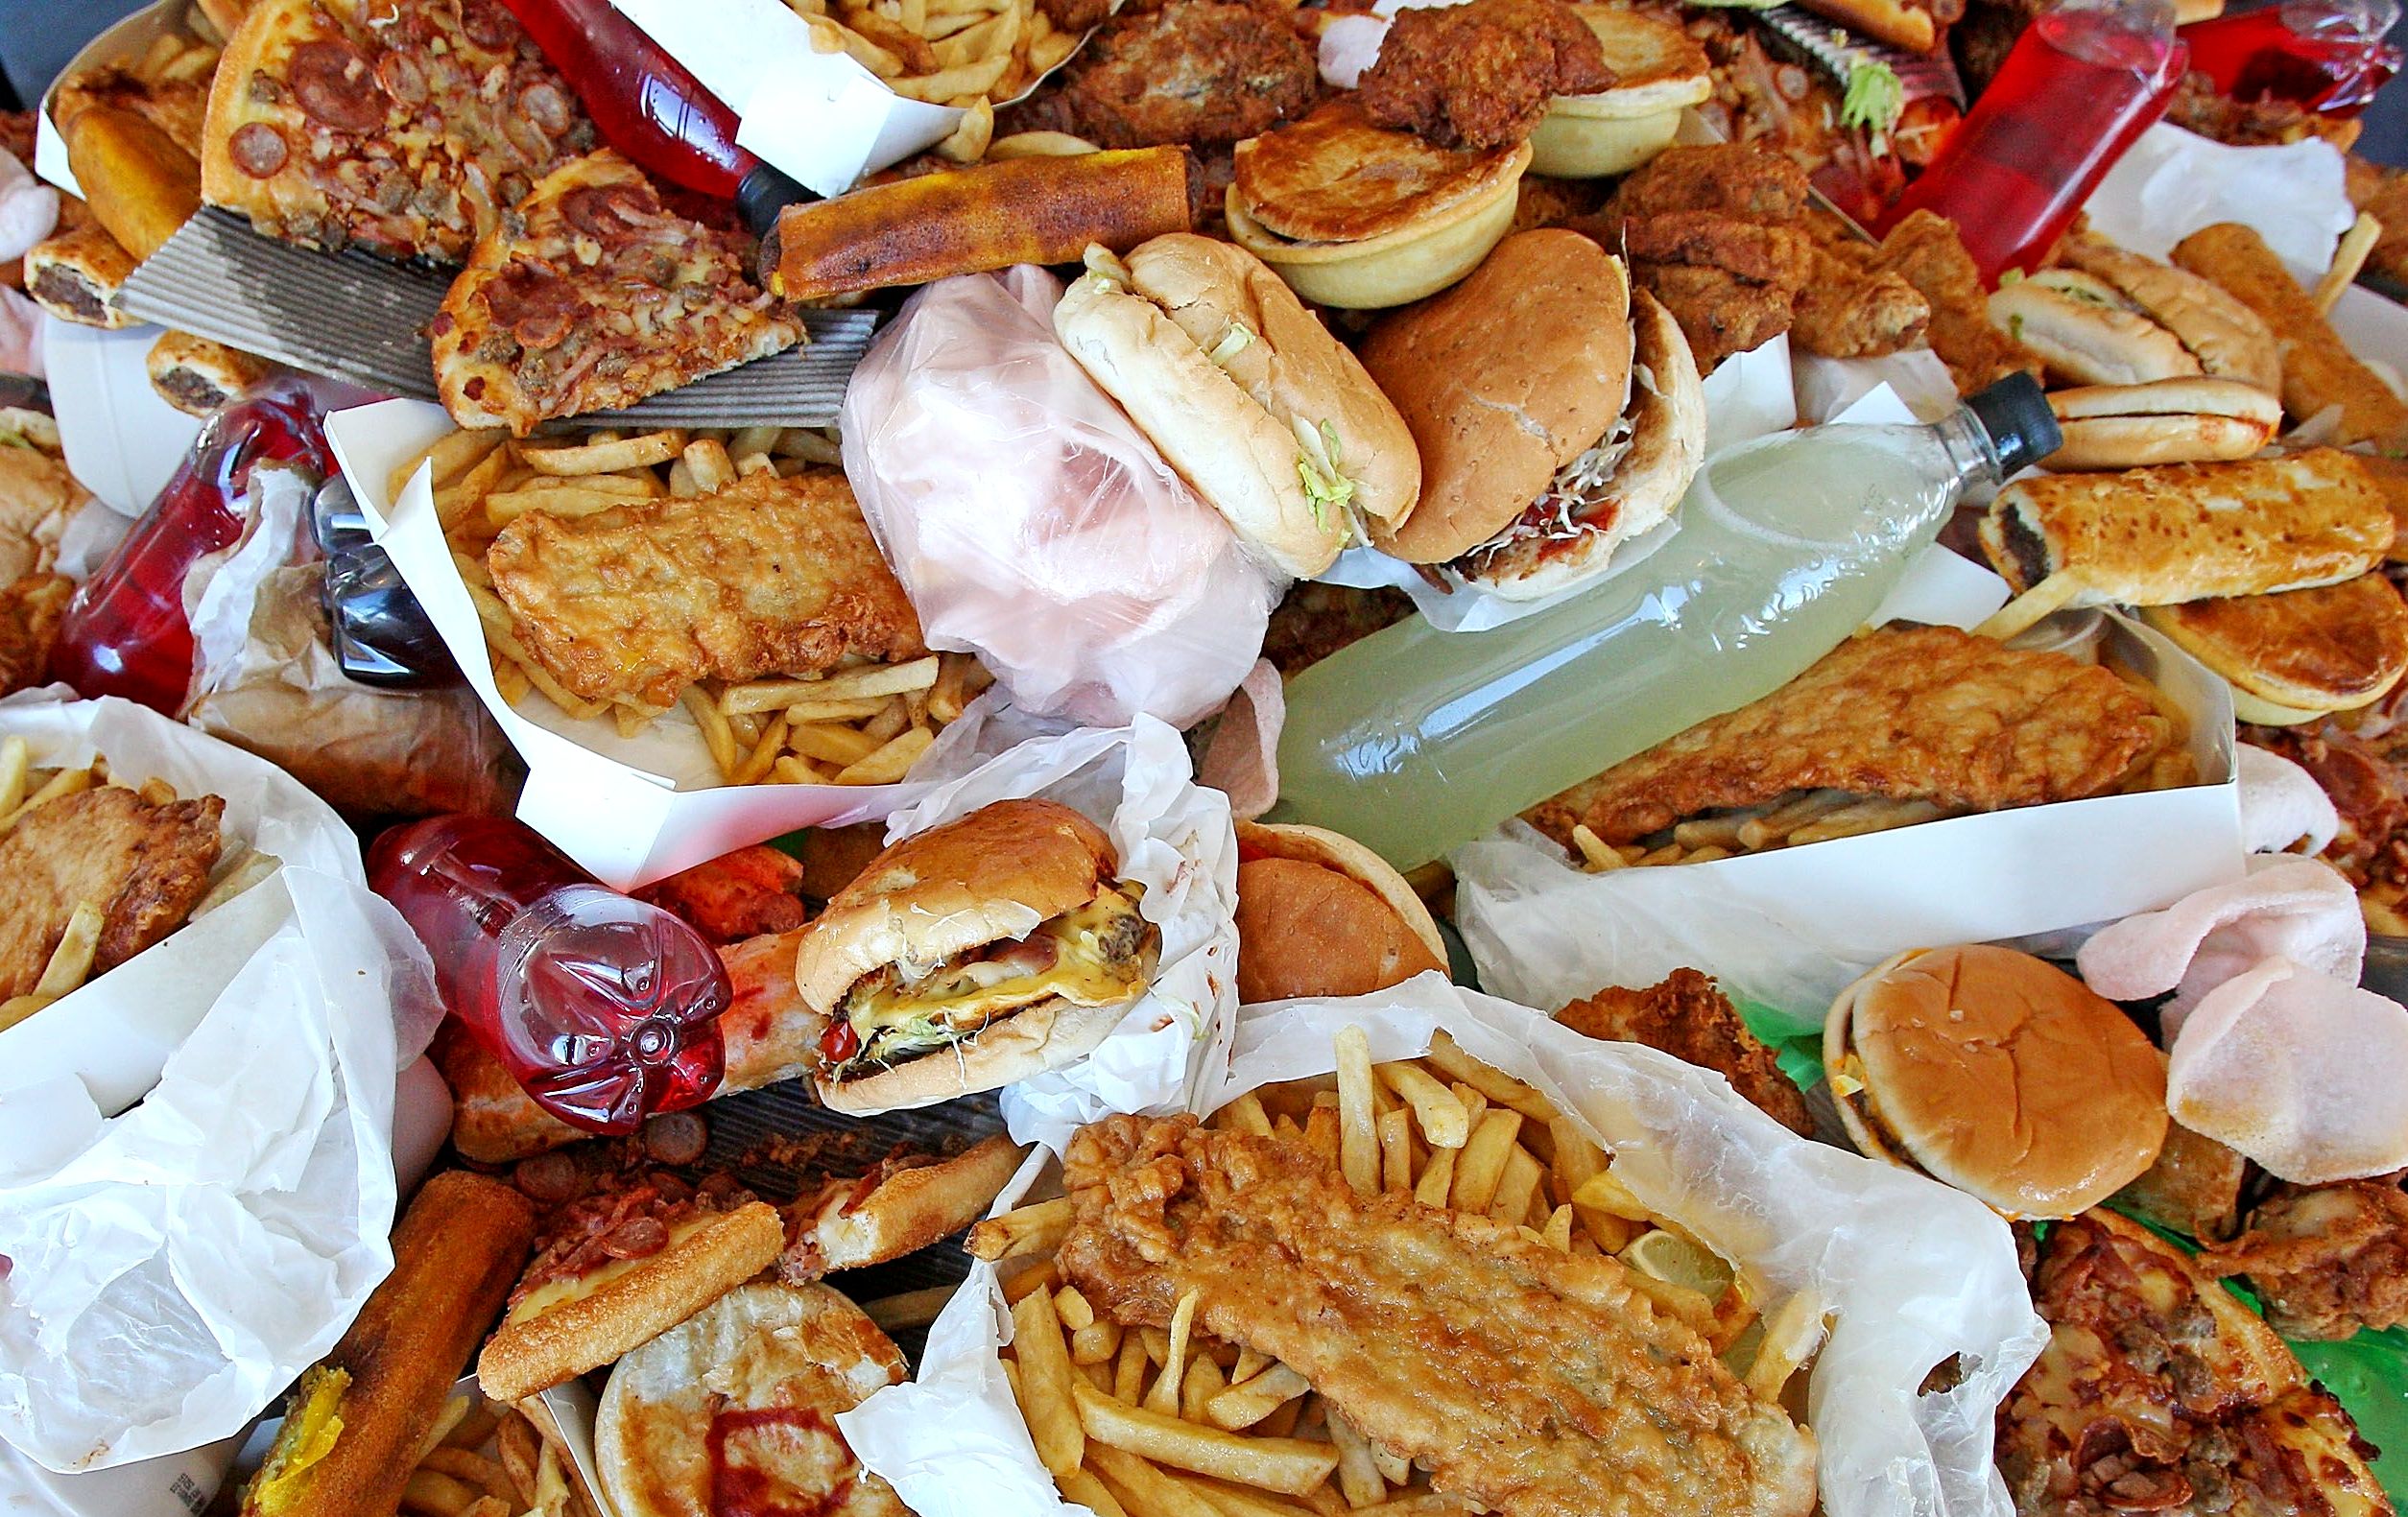 Eliminare il cibo-spazzatura fa bene alla salute e al portafoglio